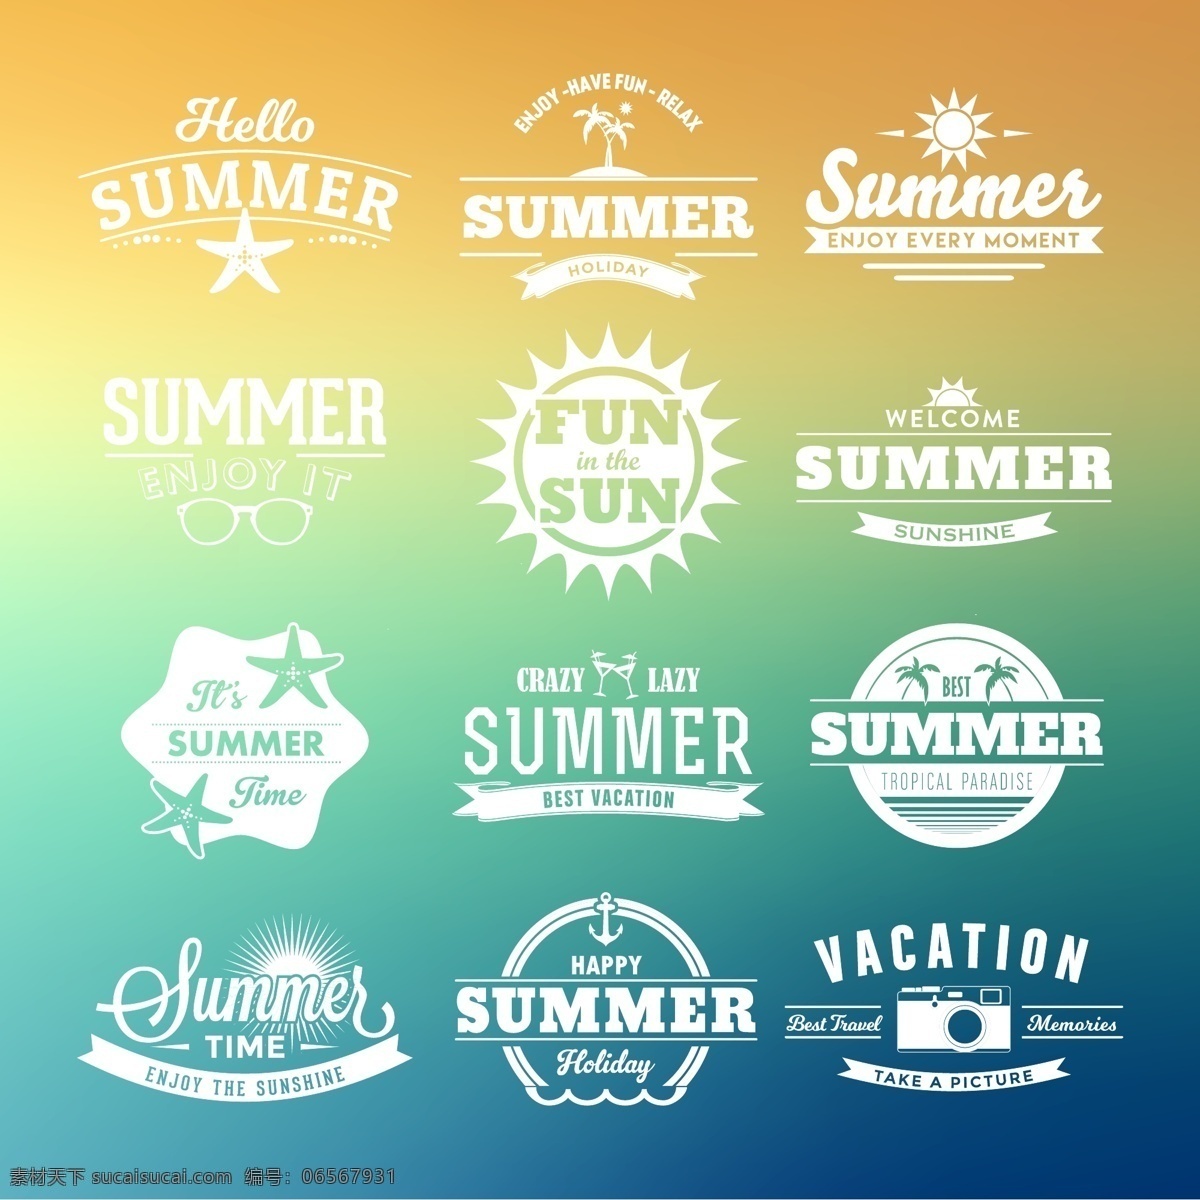 夏天 标签 集合 旅游 夏季 徽章 邮票 贴纸 太阳 印刷术 假日 时间 标志 乐趣 假期 符号 季节 记忆